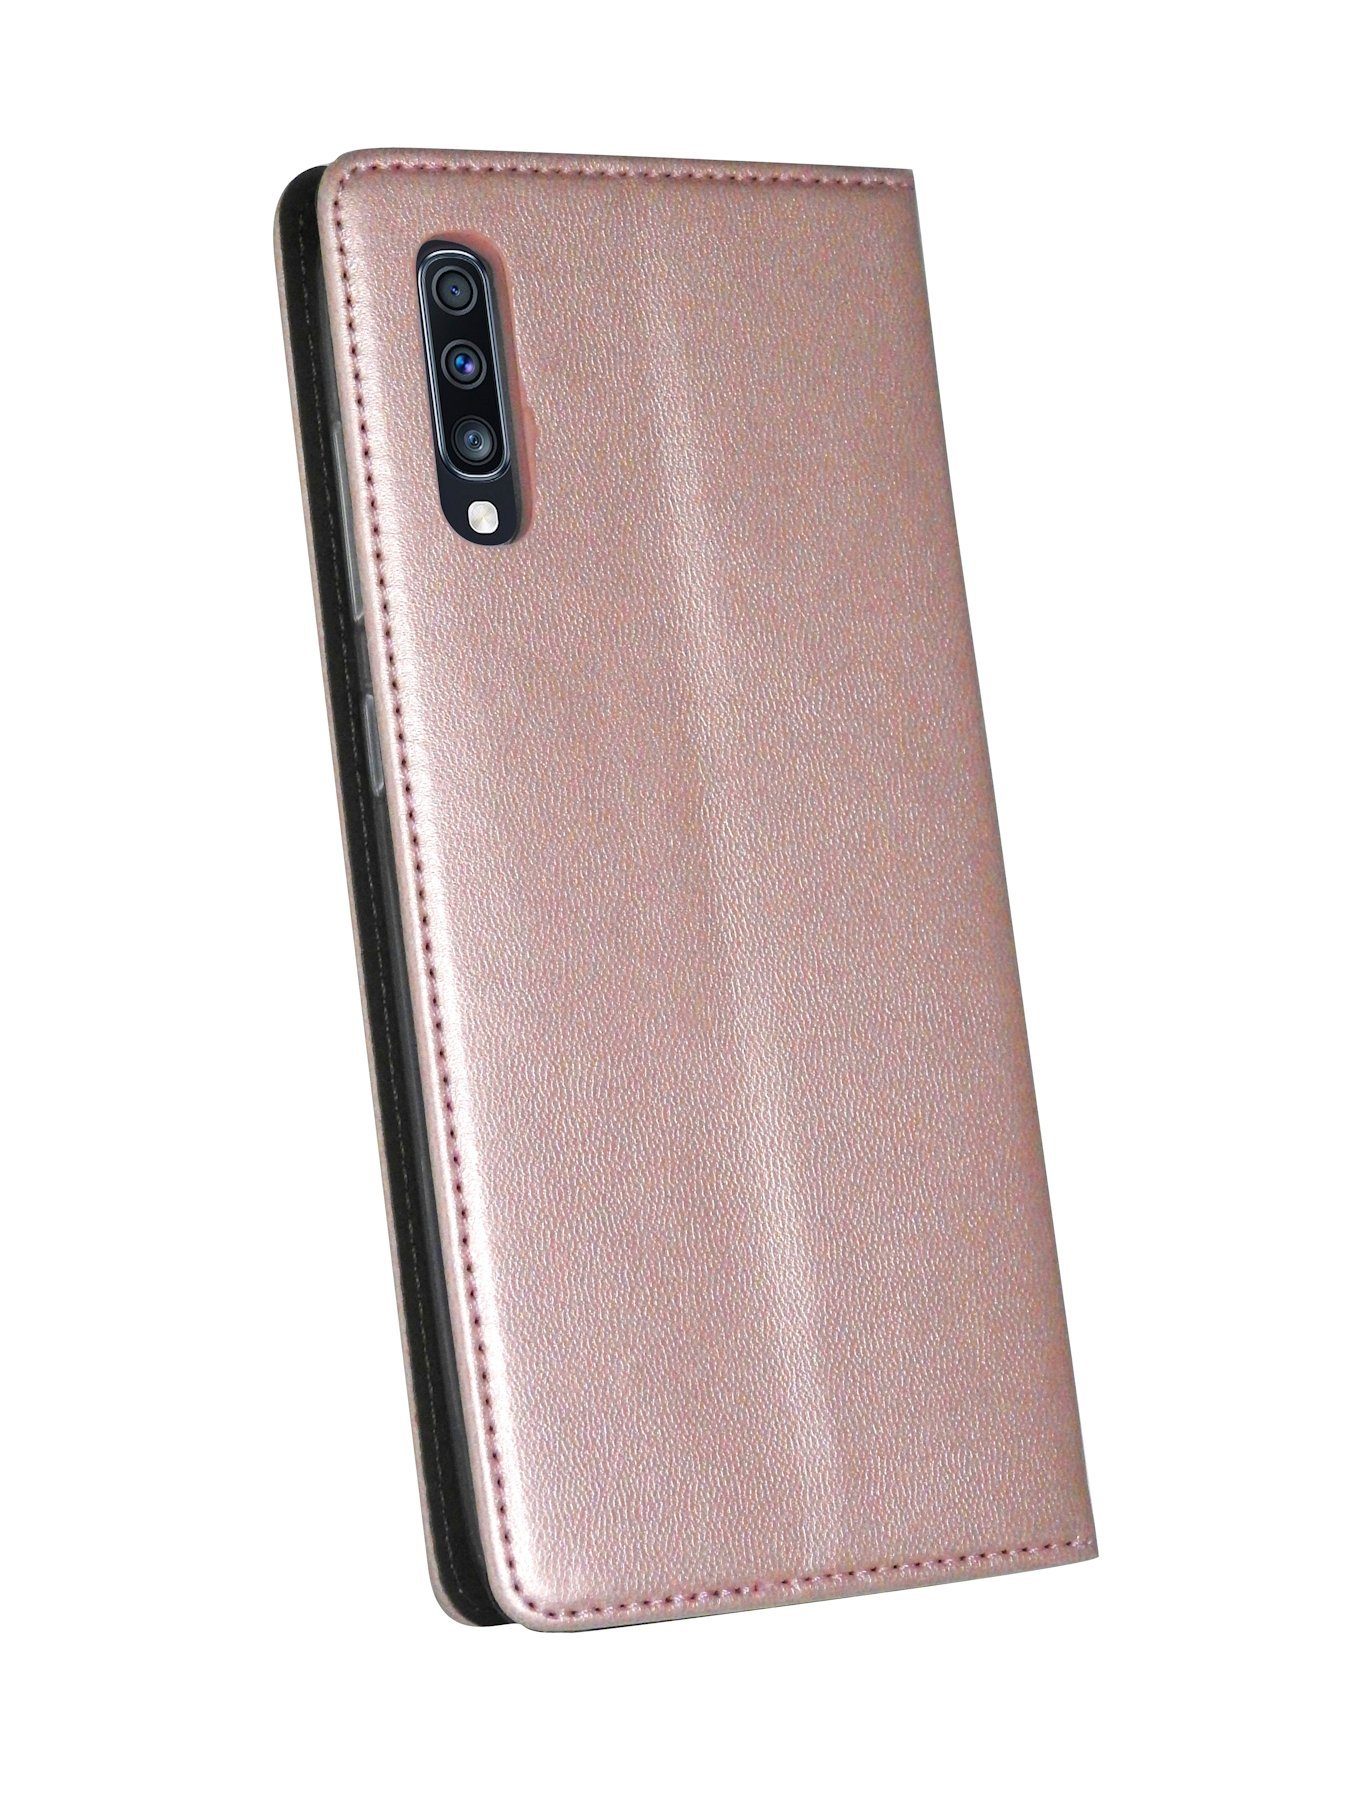 cofi1453 Standfunktion, Rose Handy Etui Tasche GALAXY (A705F) Hülle Schutzhülle mit mit A70 Buch Kartenfach "Smart" kompatibel SAMSUNG Handytasche Brieftasche